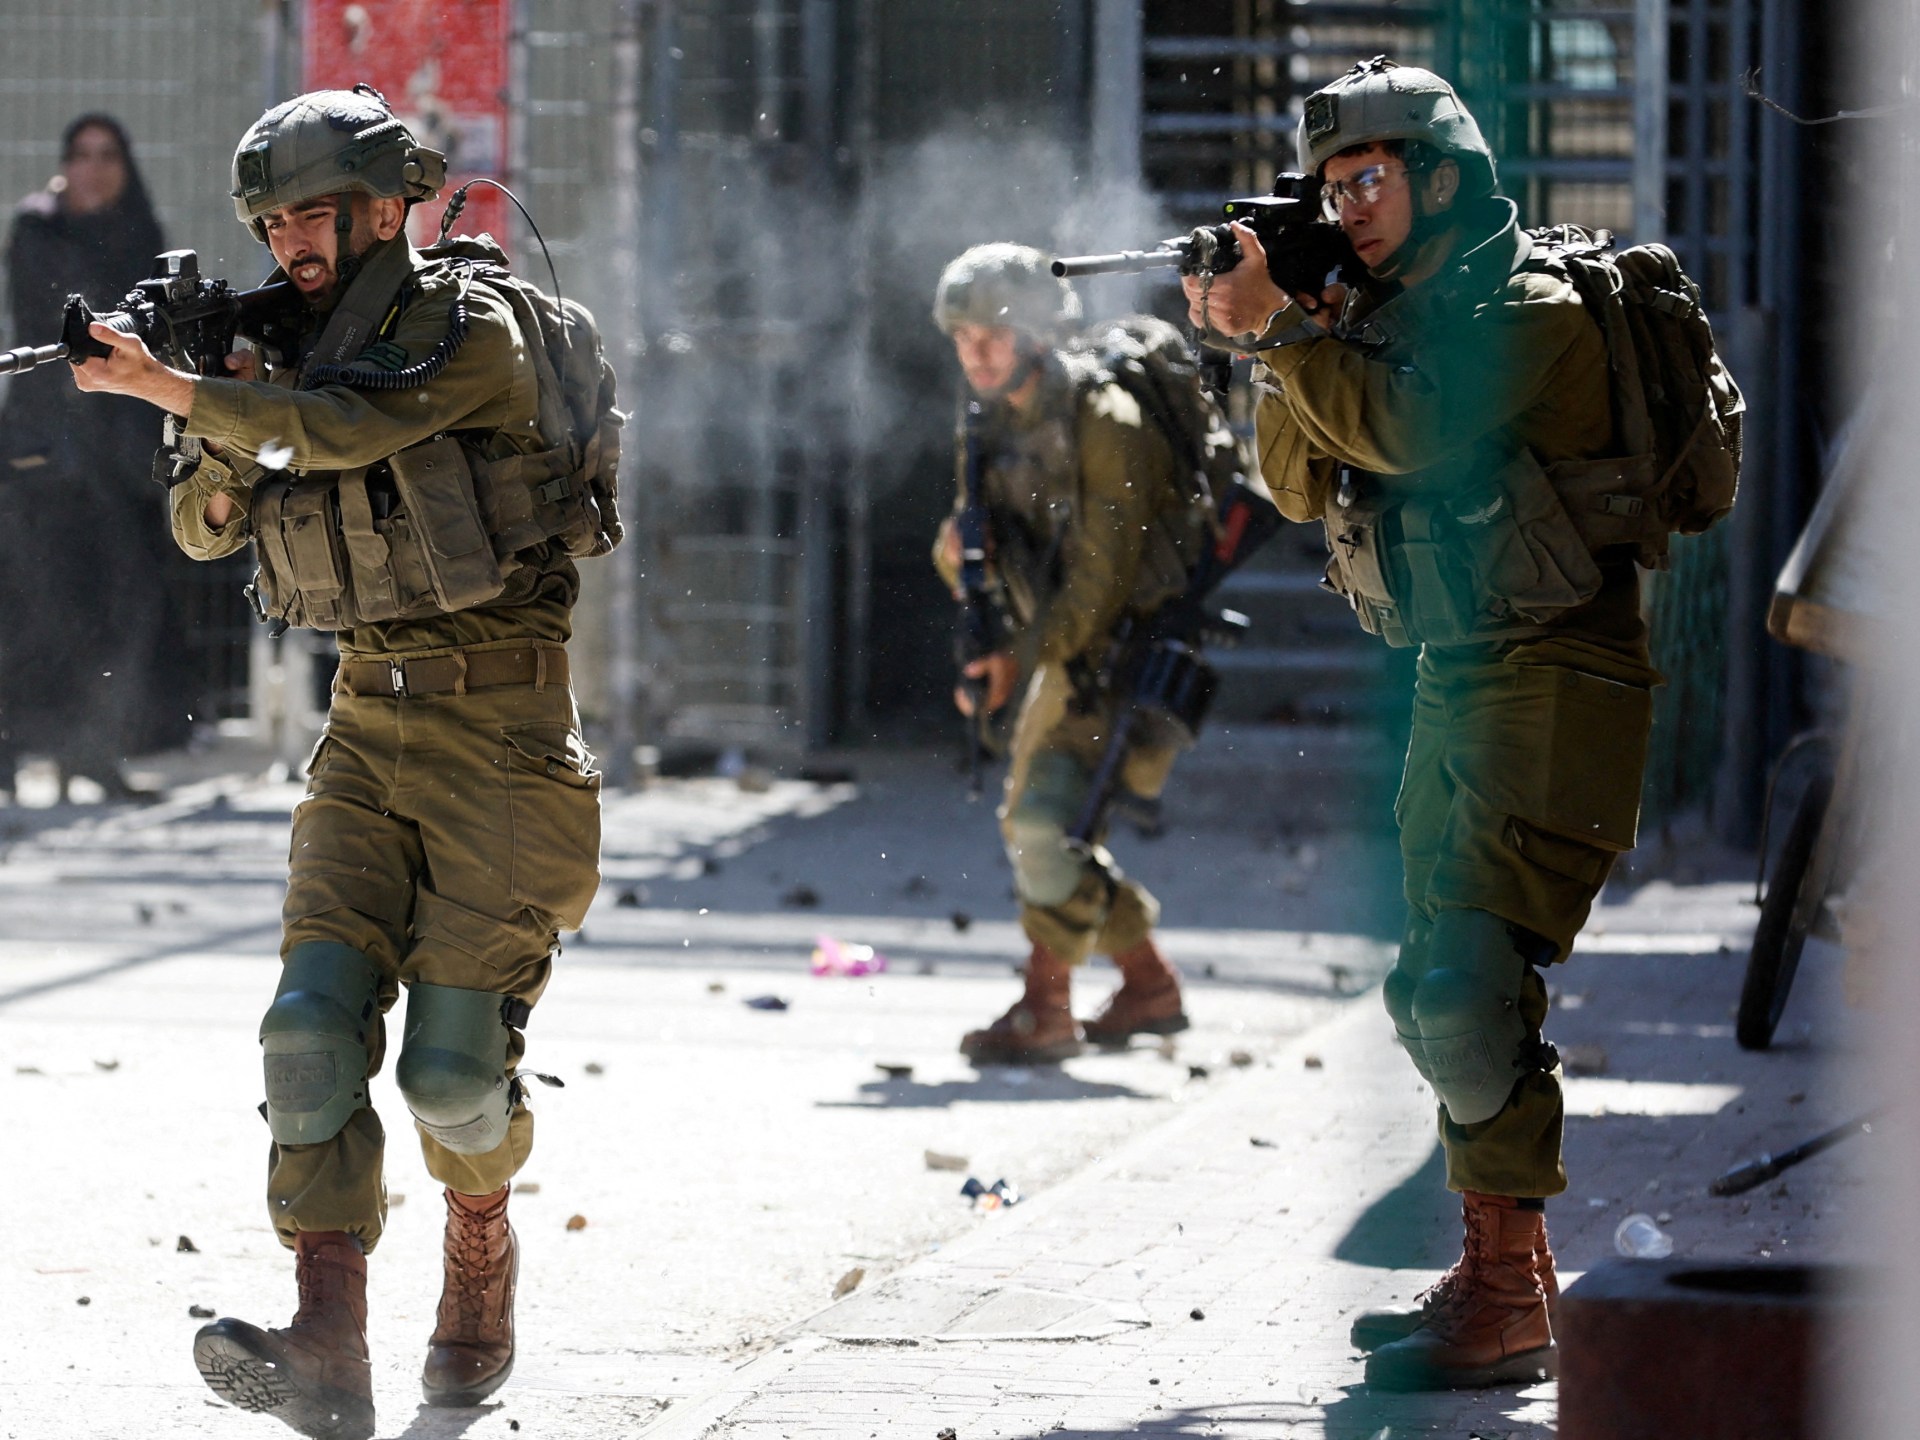 Pengadilan militer Israel memenjarakan tentara karena melecehkan pria Palestina |  Berita Krimea